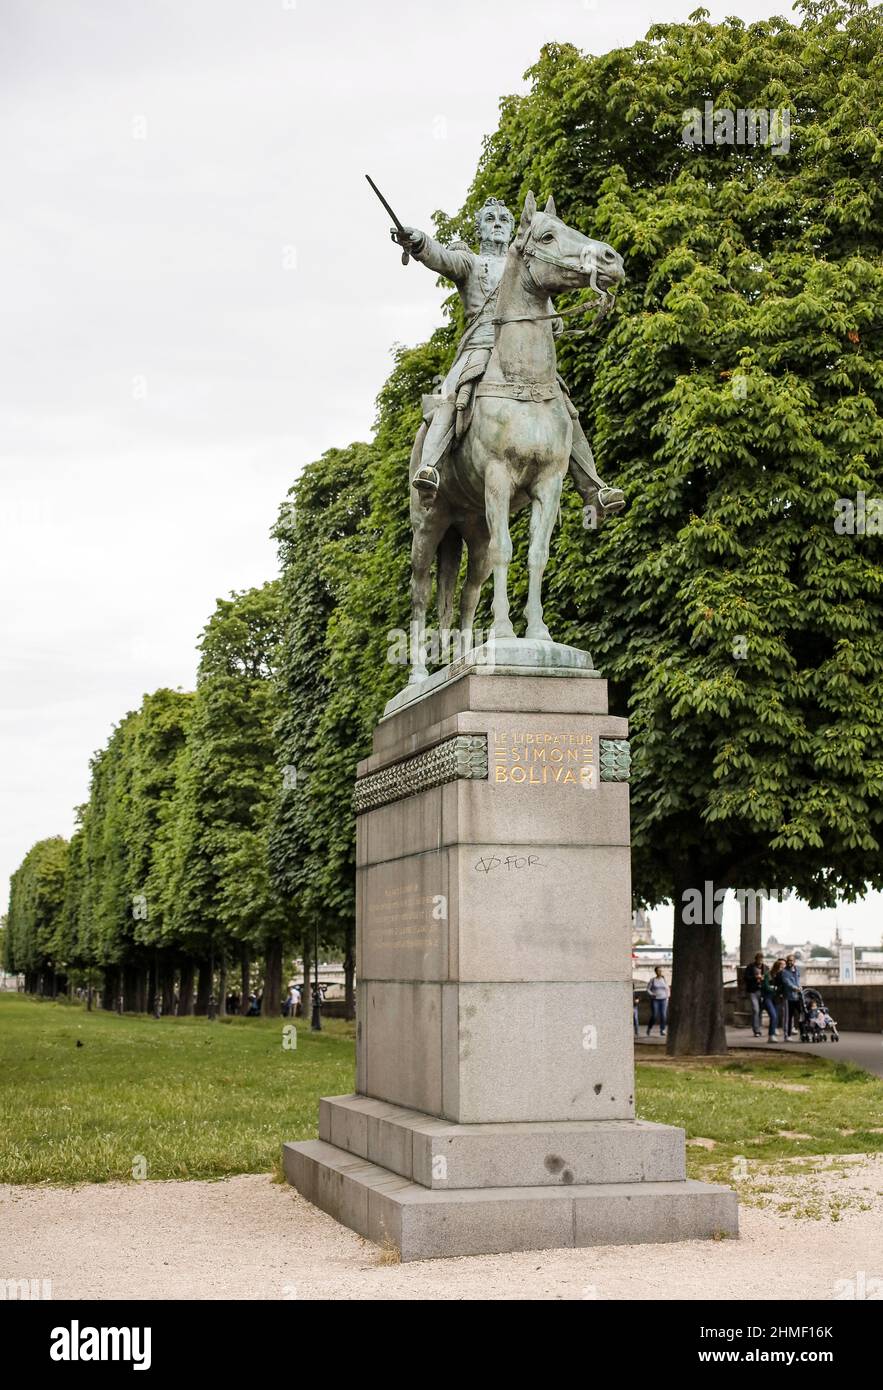 Estatua del líder de la Liberación Sudamericana Simón Bolívar de Emmanuel Fremiet en el paseo y parque Cours la Reine en París, Francia Foto de stock